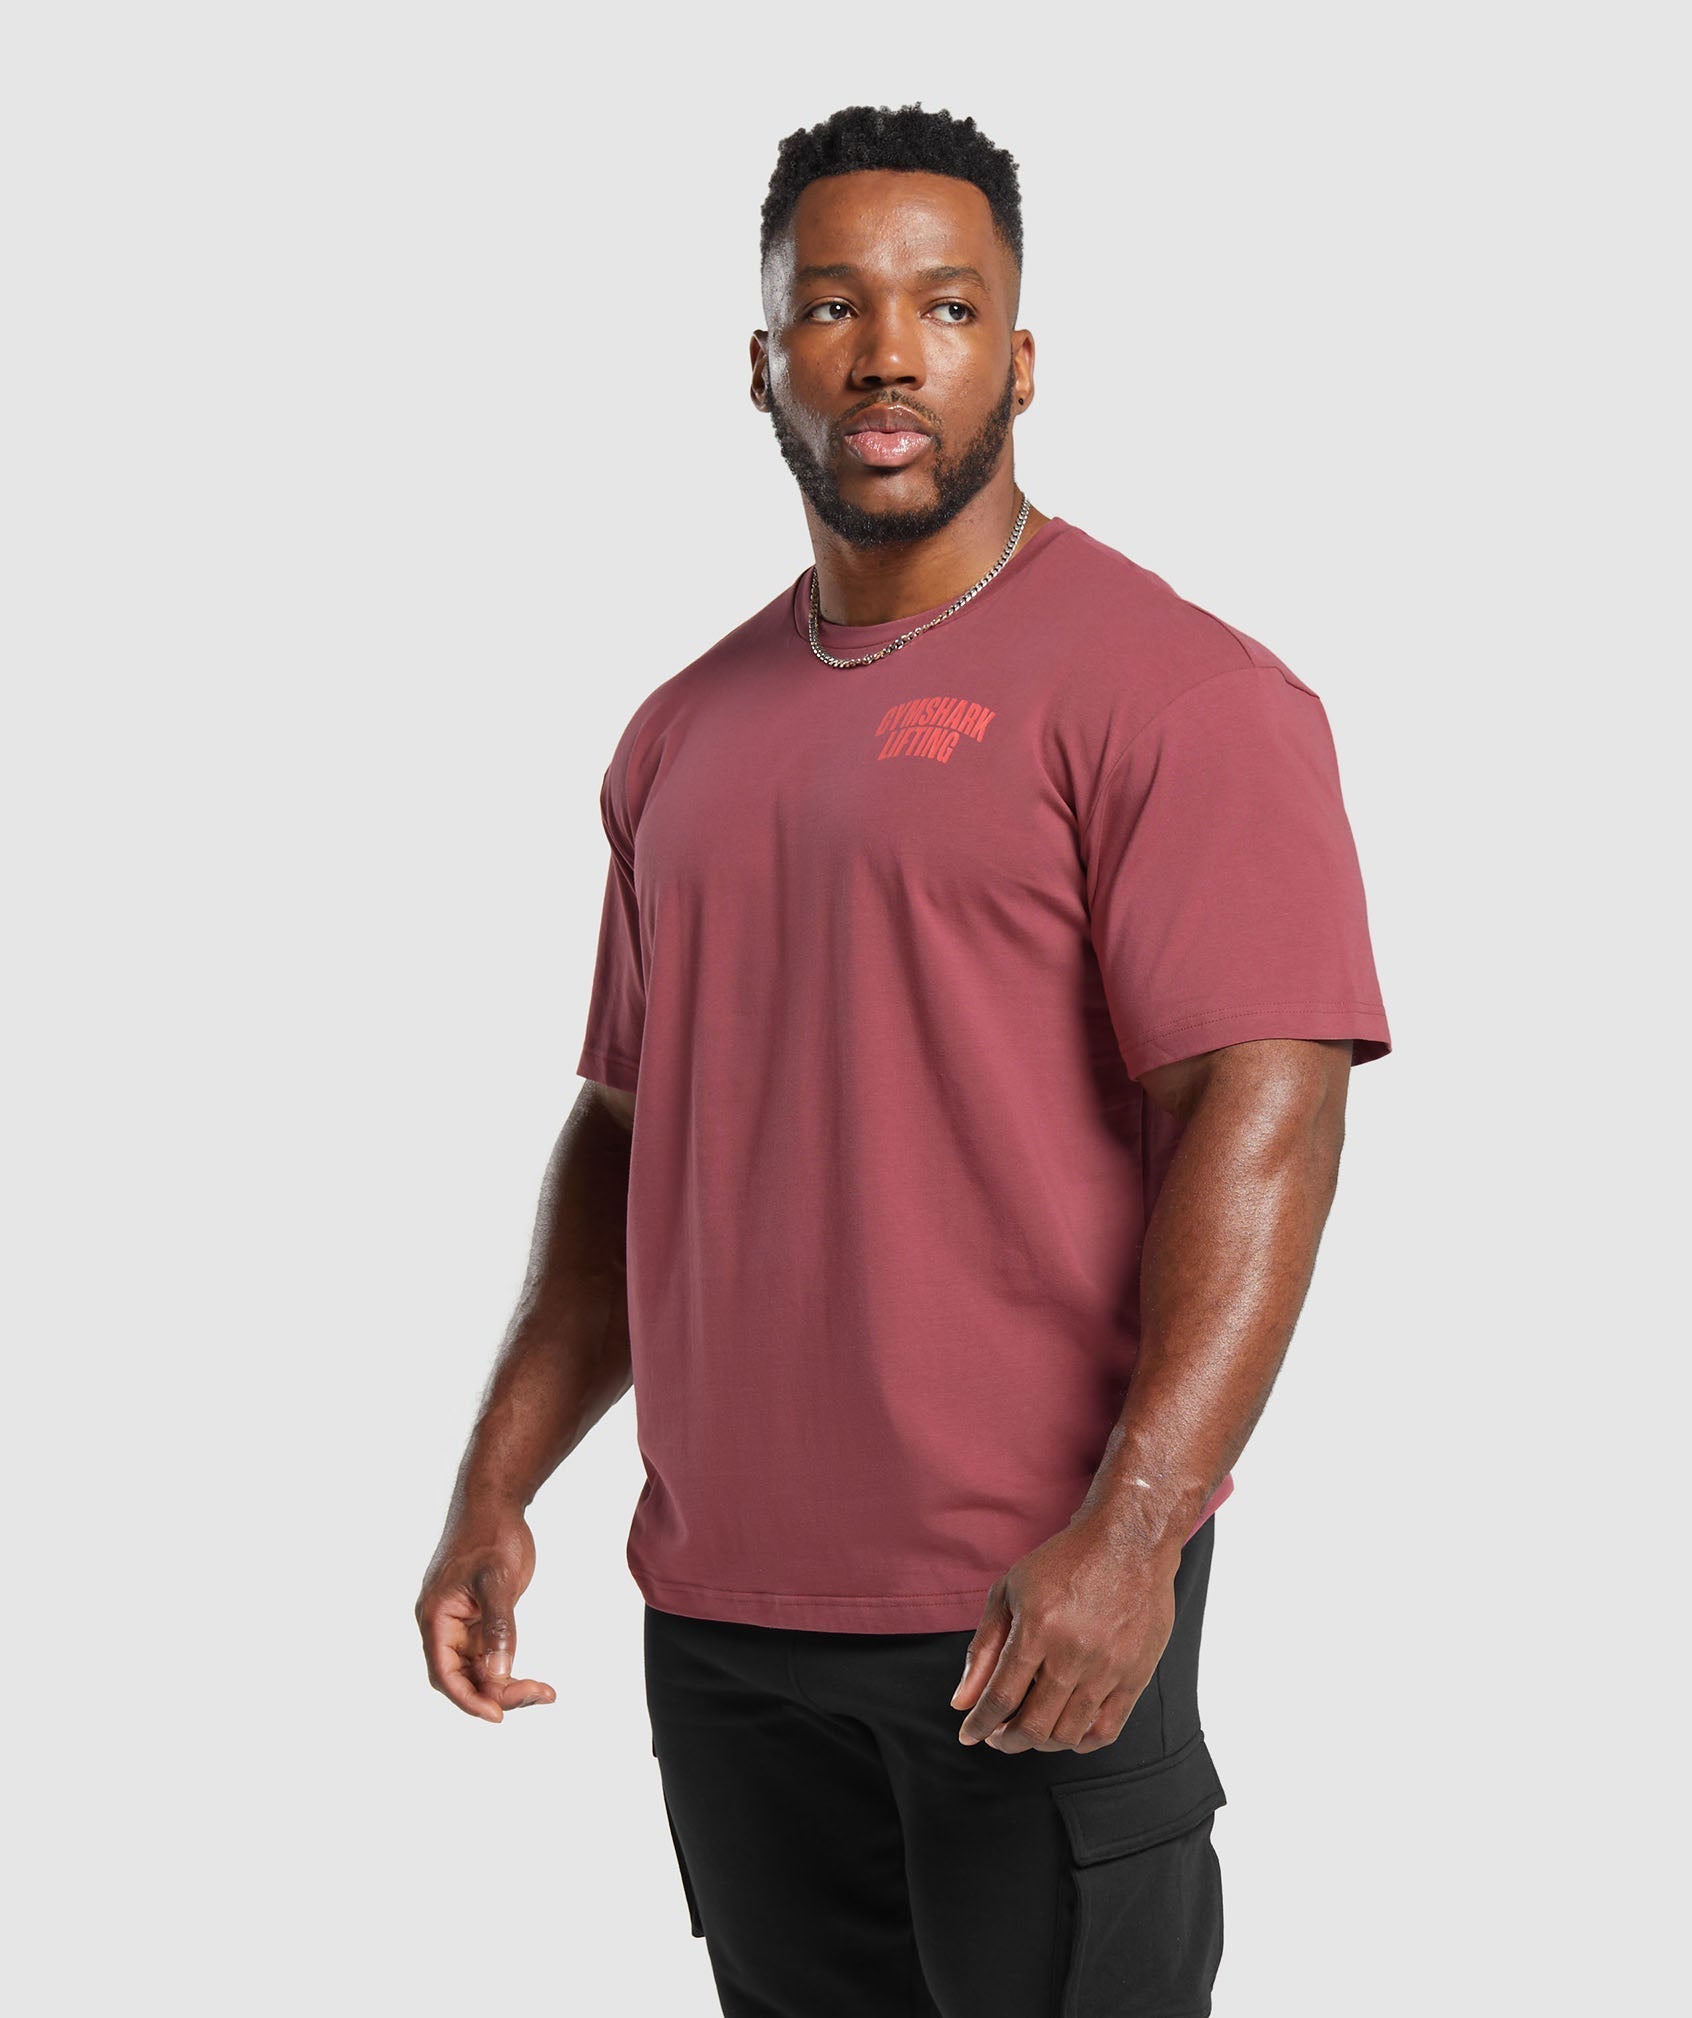 Gymshark Fraction Oversized T-Shirt - Soft Berry